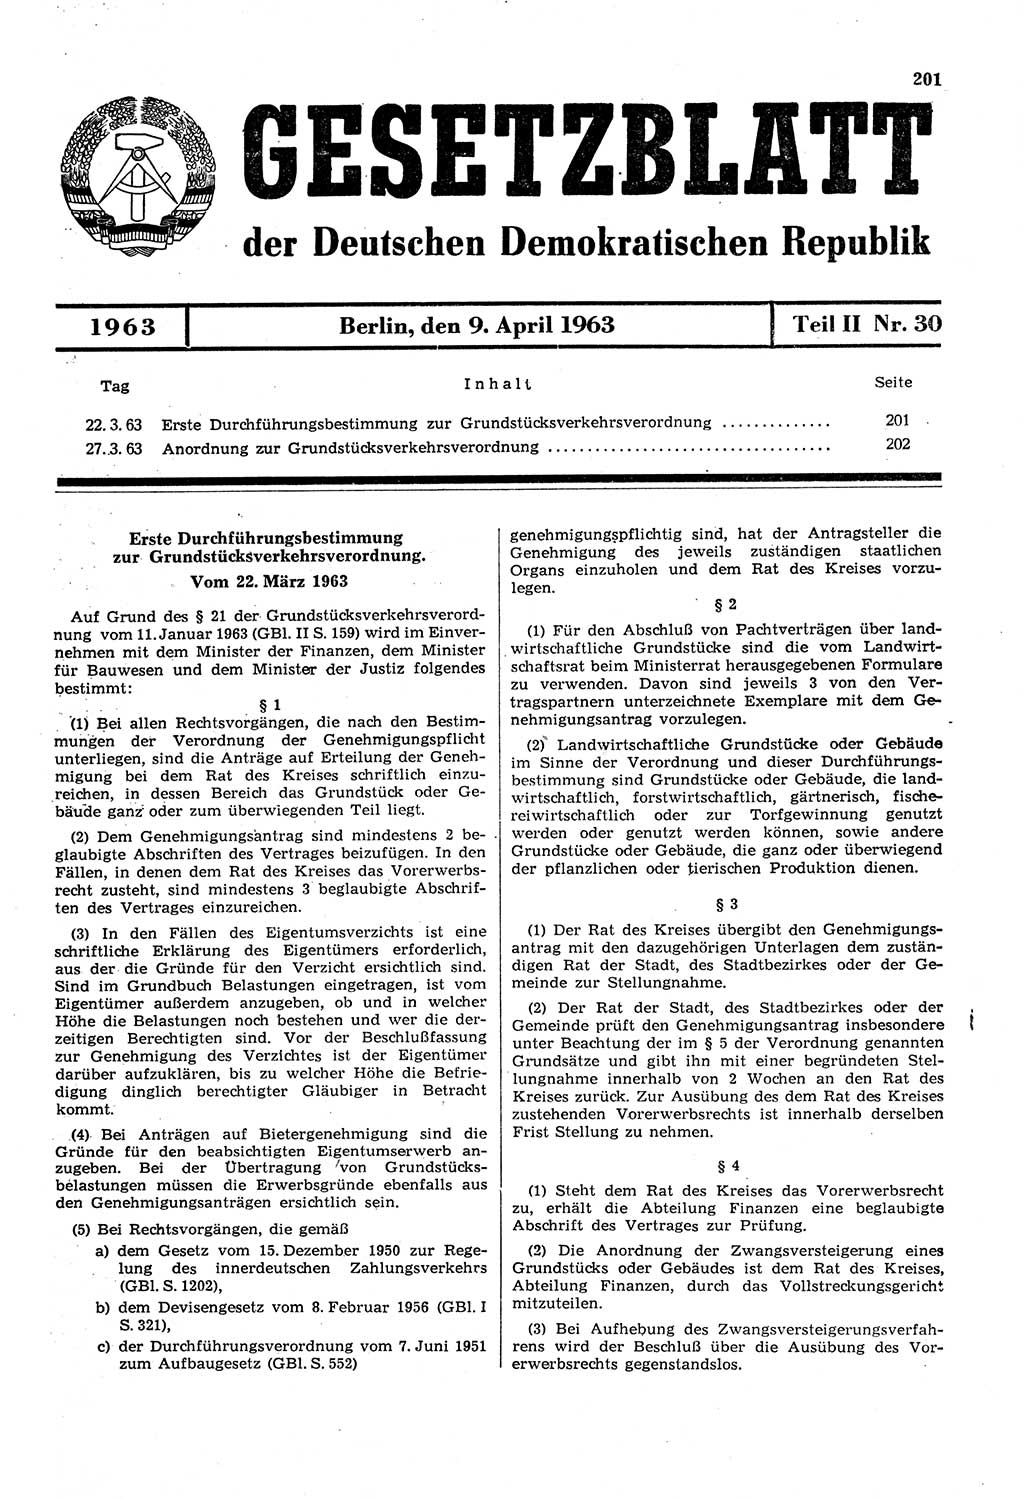 Gesetzblatt (GBl.) der Deutschen Demokratischen Republik (DDR) Teil ⅠⅠ 1963, Seite 201 (GBl. DDR ⅠⅠ 1963, S. 201)